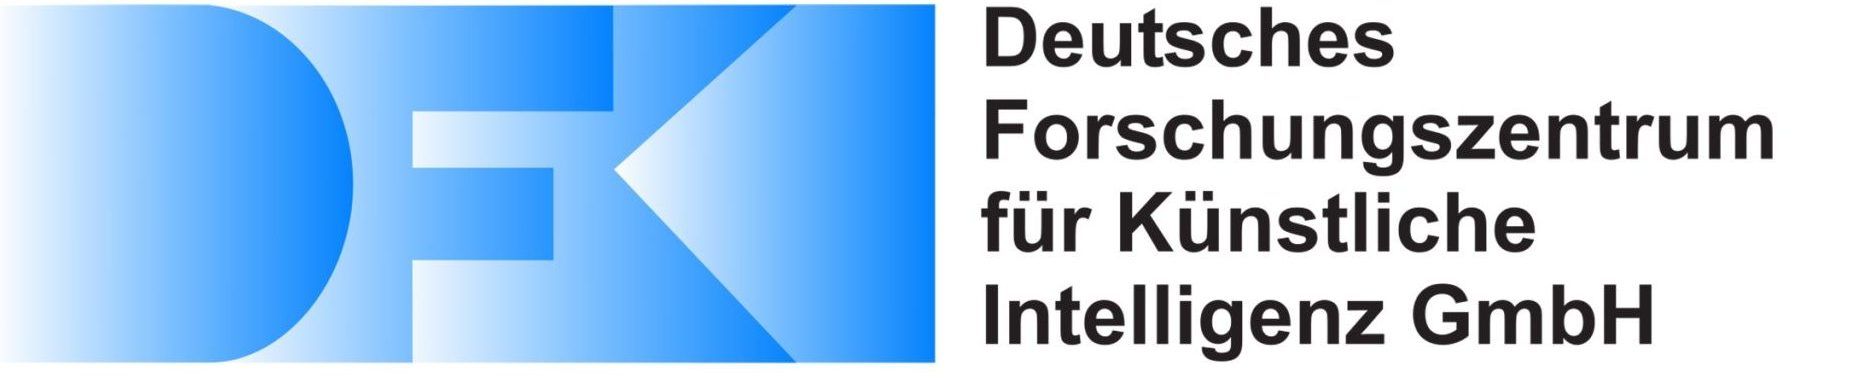 DFKI Deutsches Forschungszentrum für Künstliche Intelligenz